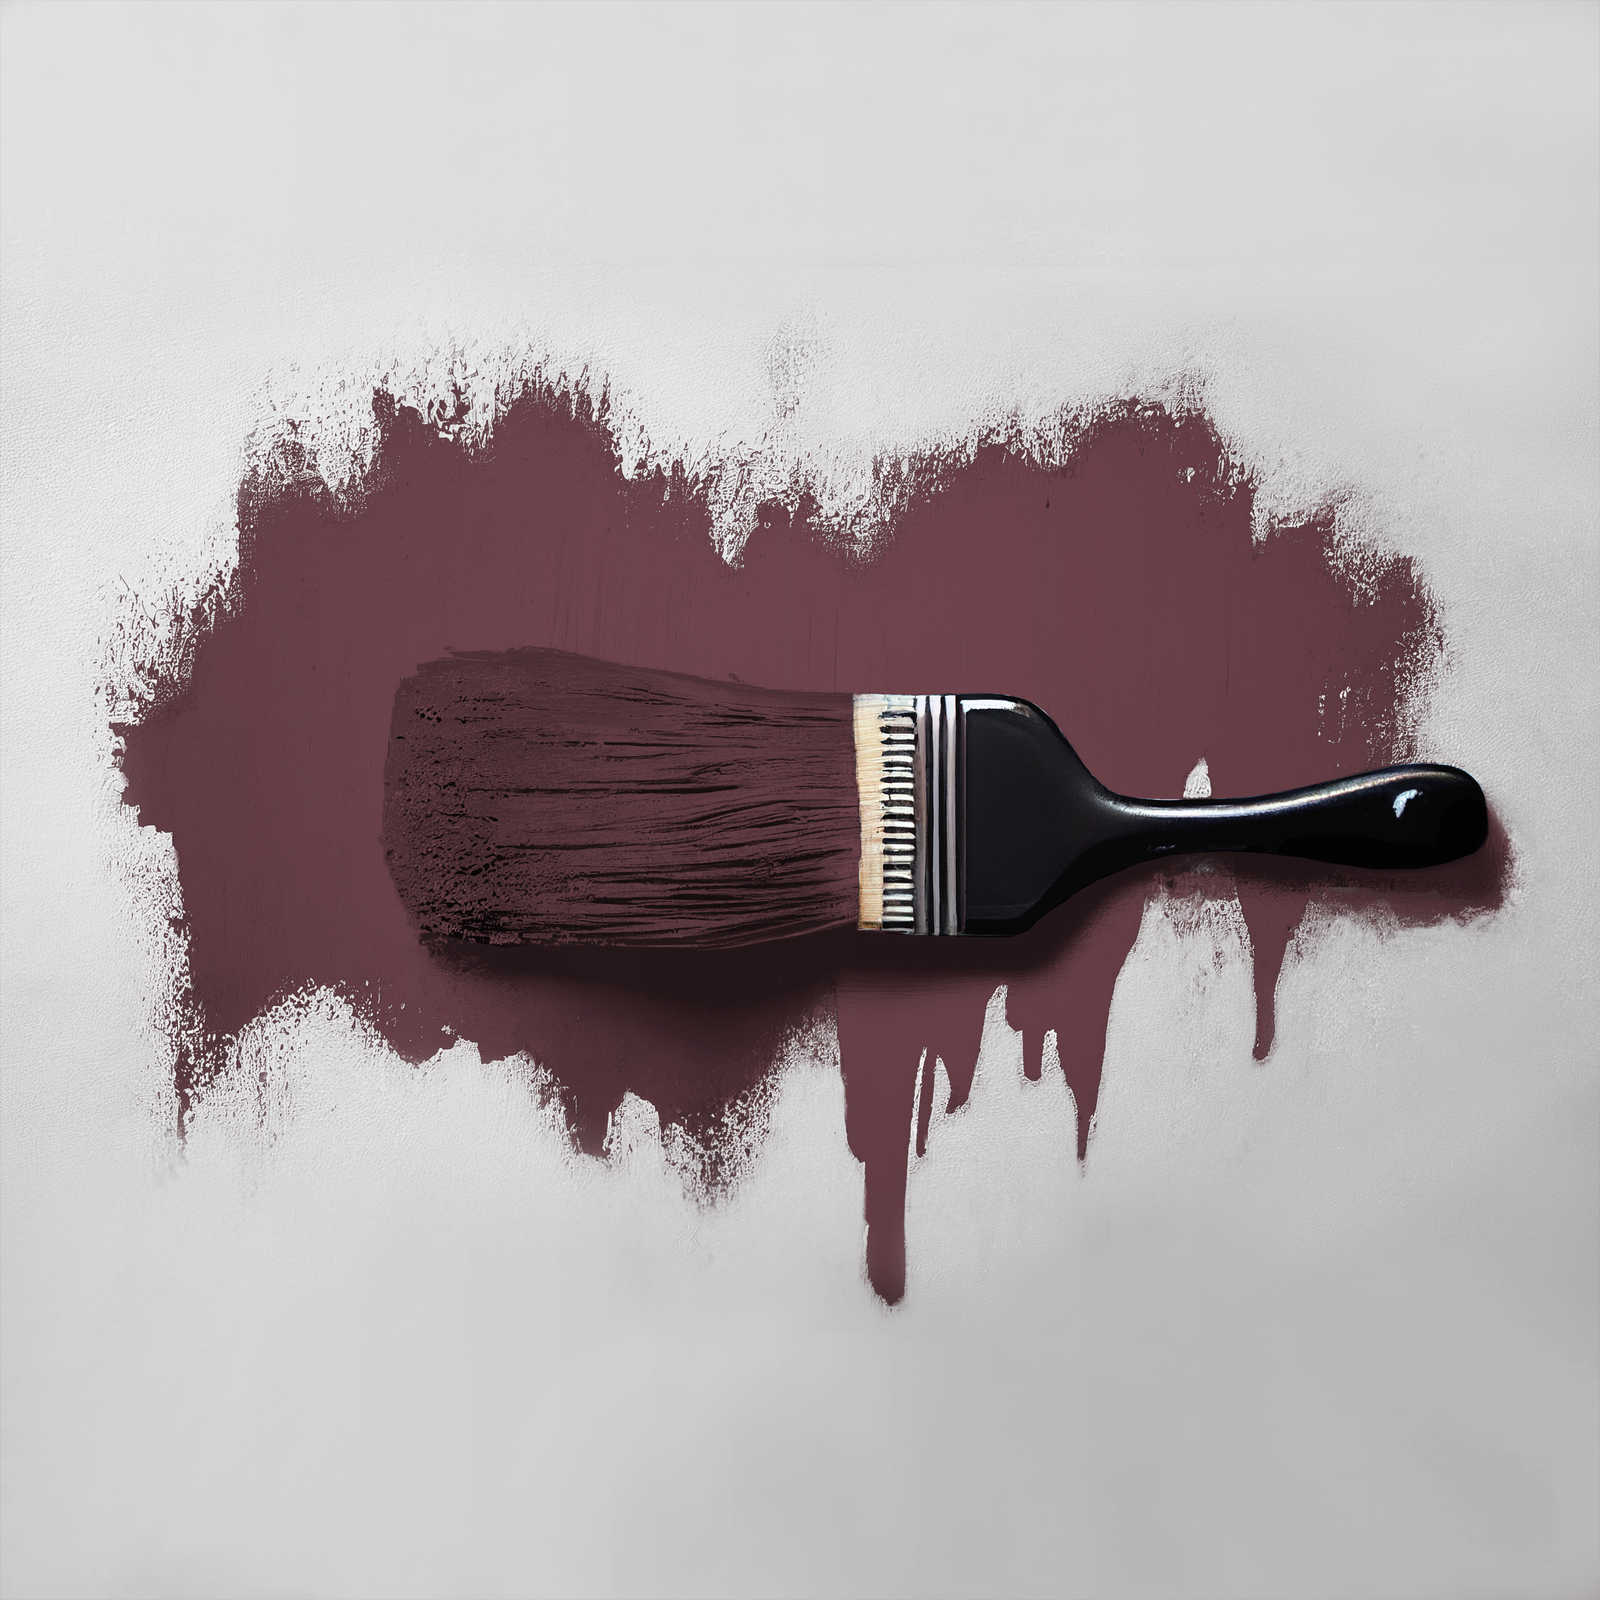             Peinture murale TCK7013 »Red Wine« en bordeaux intense – 2,5 litres
        